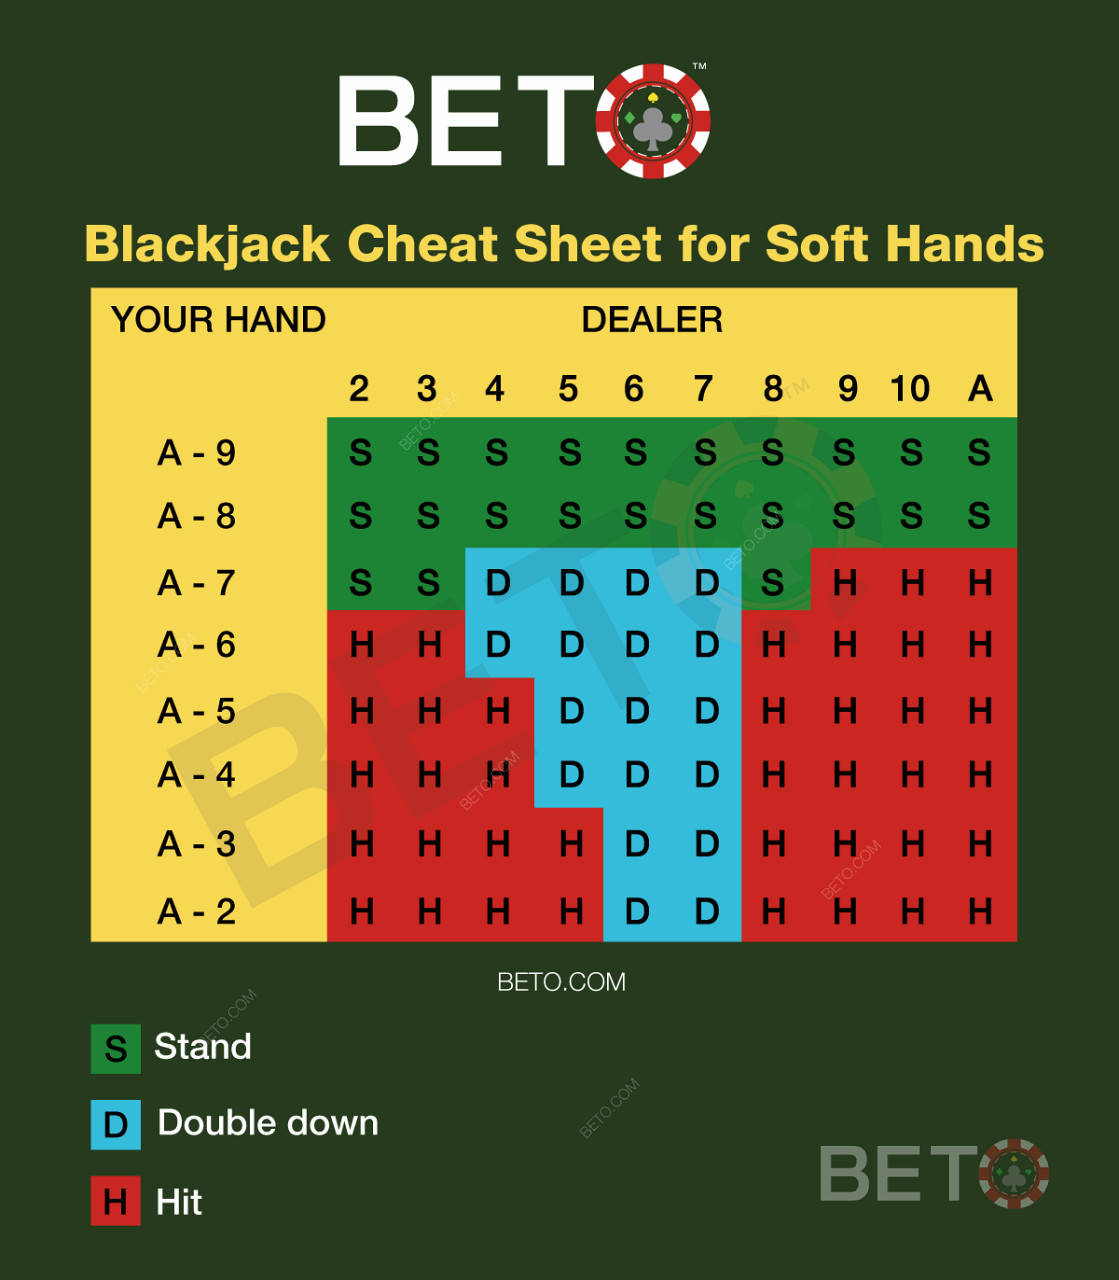 Blackjacková tabulka pro měkké ruce v blackjacku